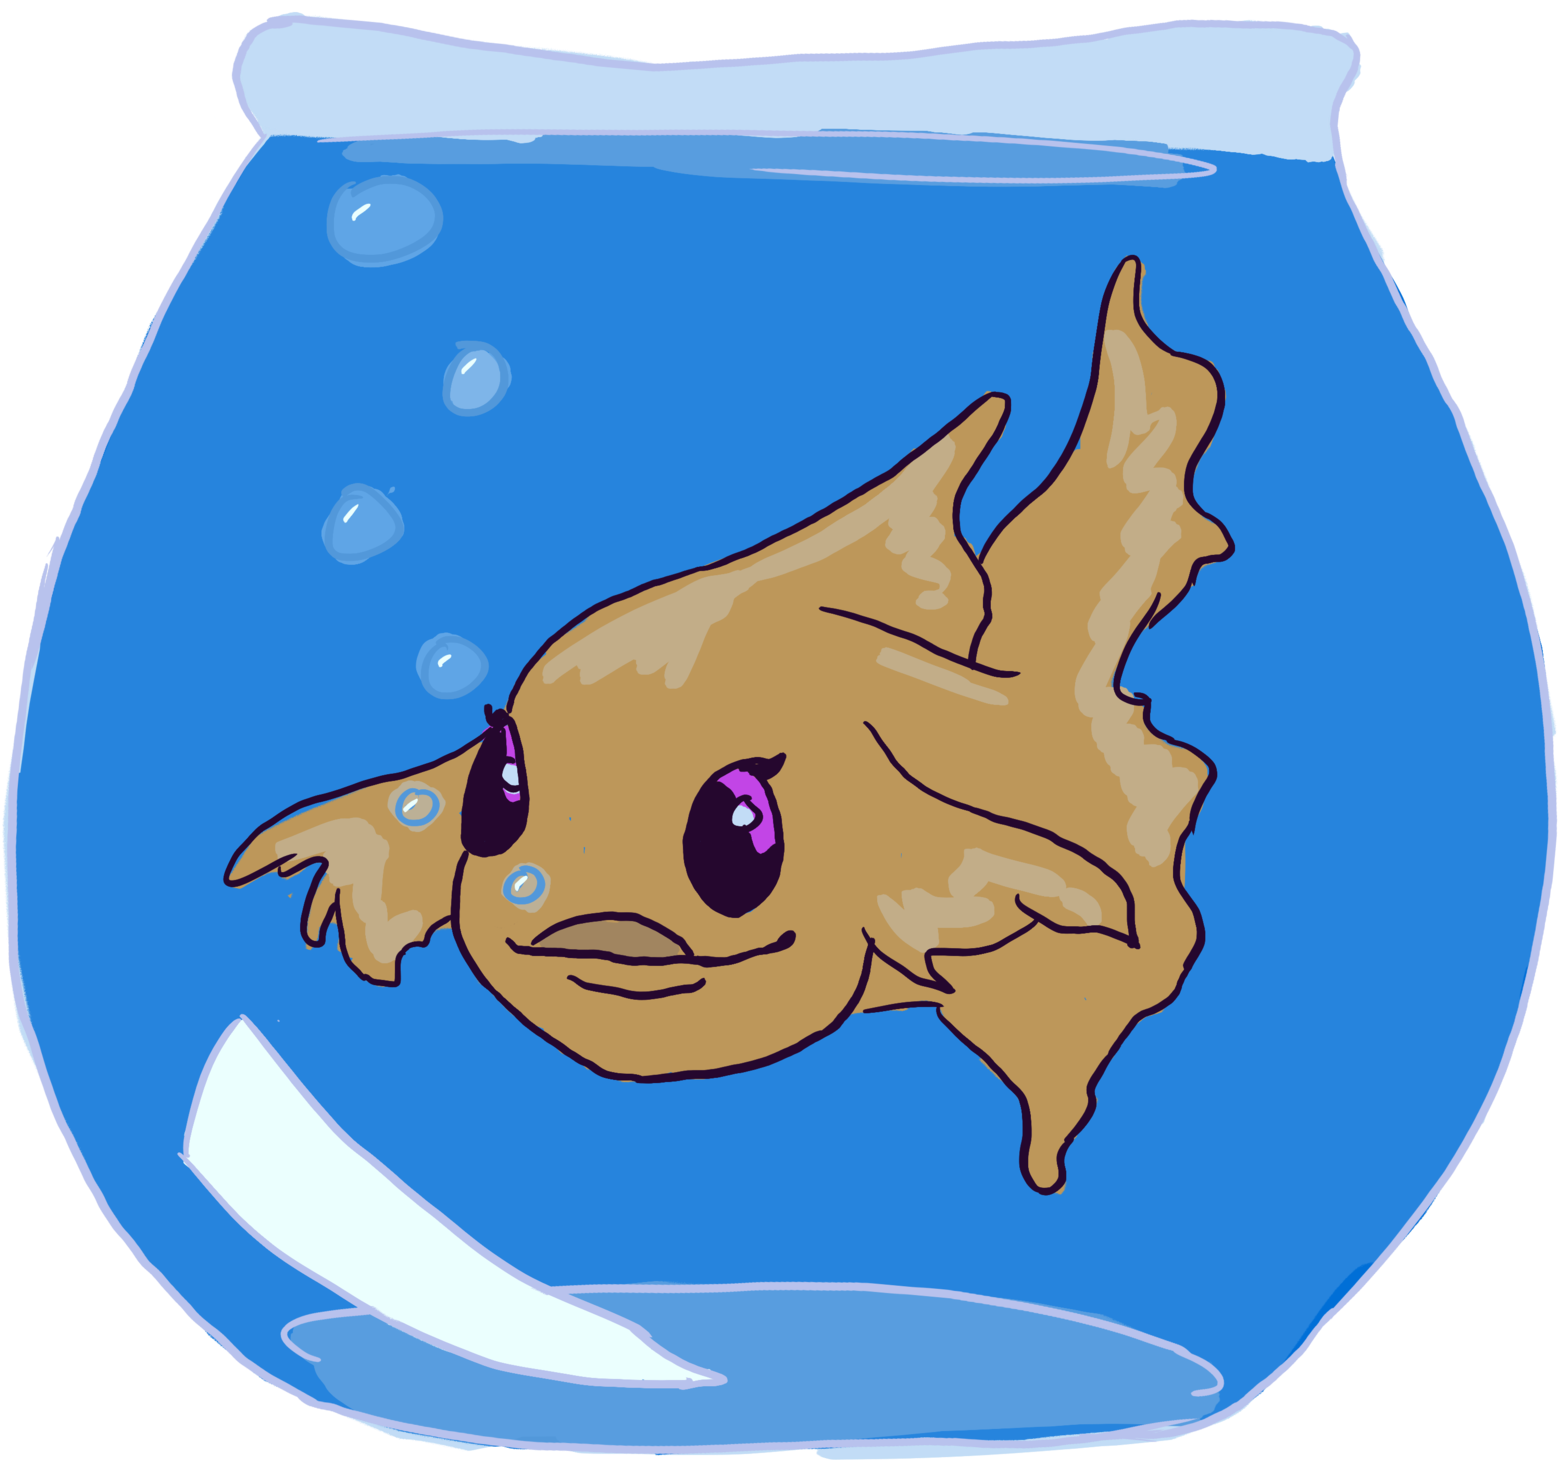 A Cartoon Fish In A Bowl